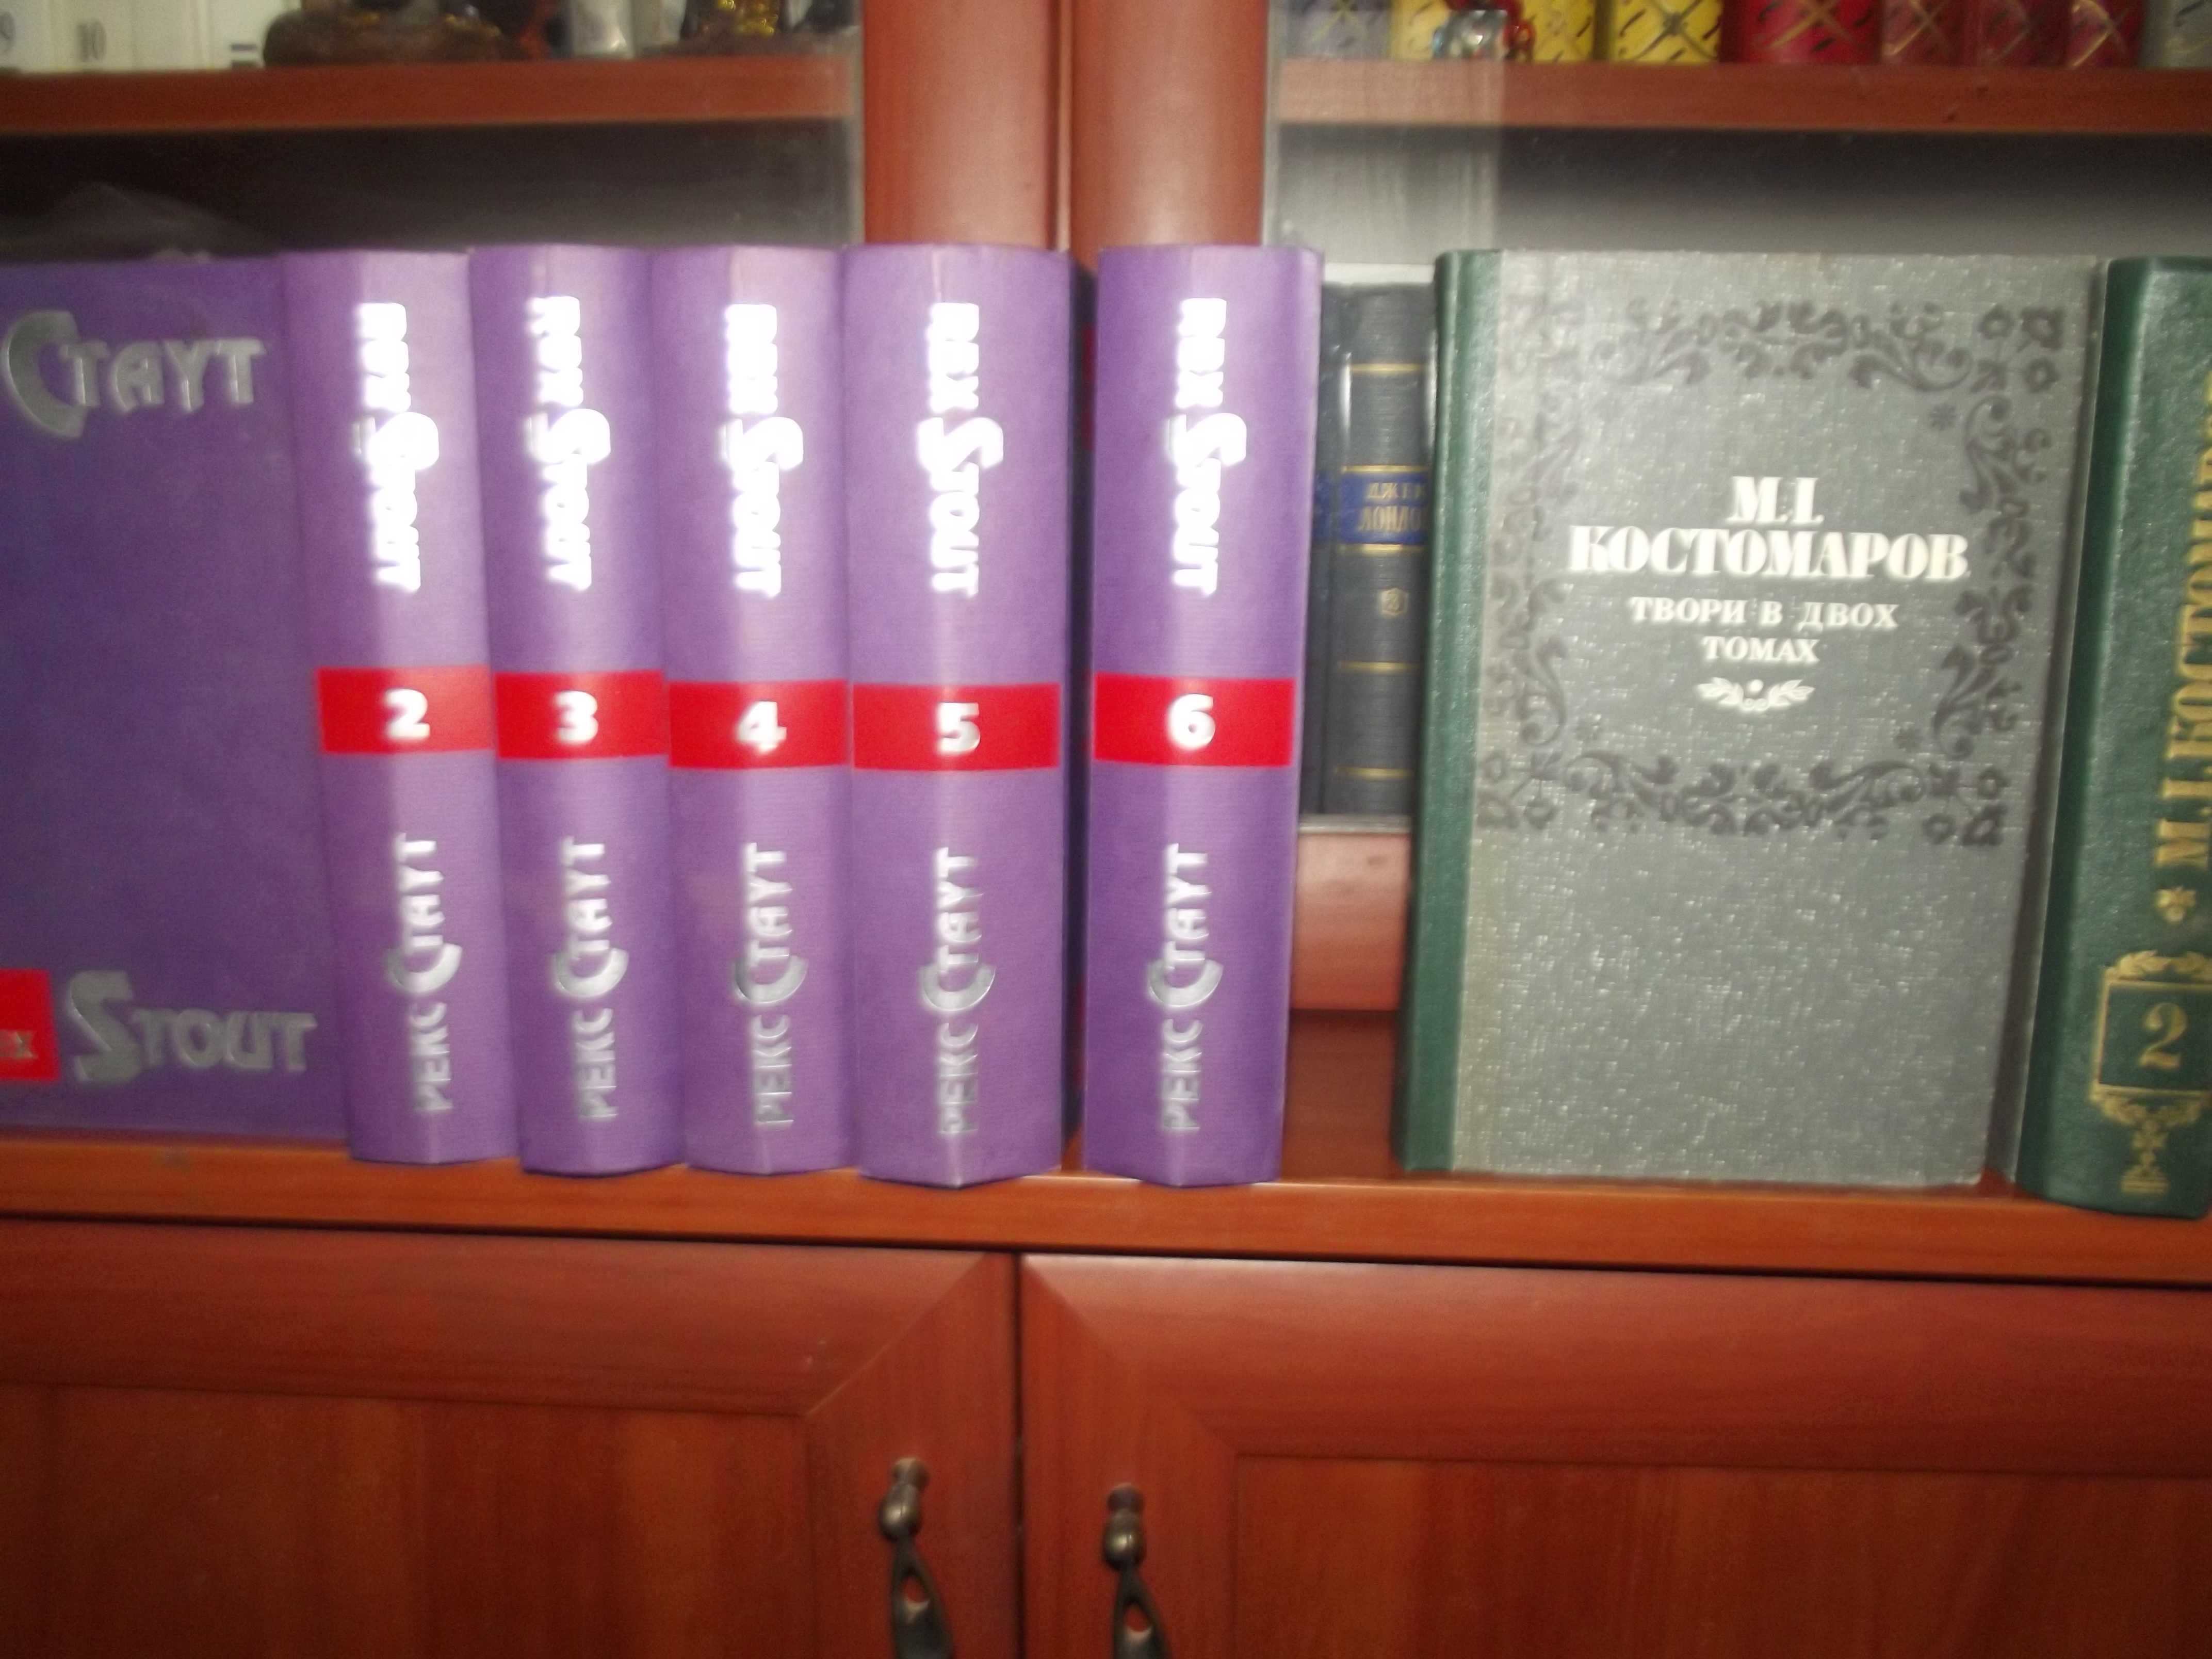 Довлатов 4 тома, Рекс Стаут 6 томов, Костомаров 2 тома